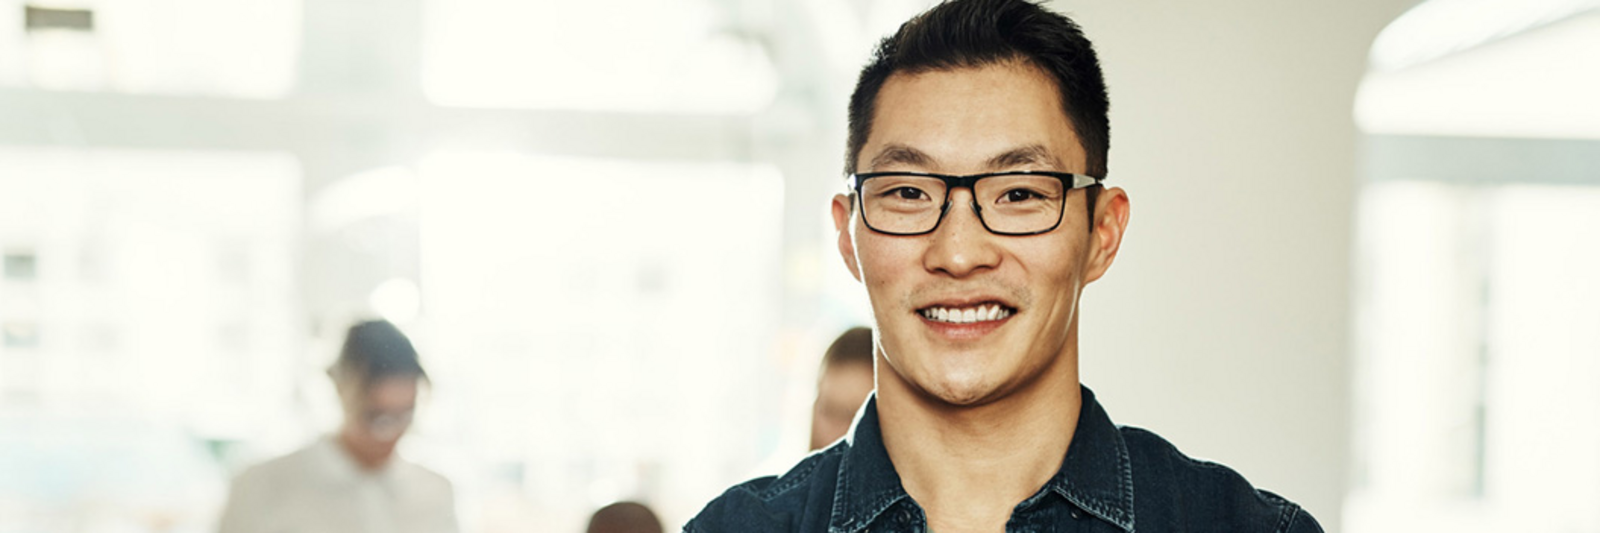 Asiatisch aussehender Mann mit Brille lächelt